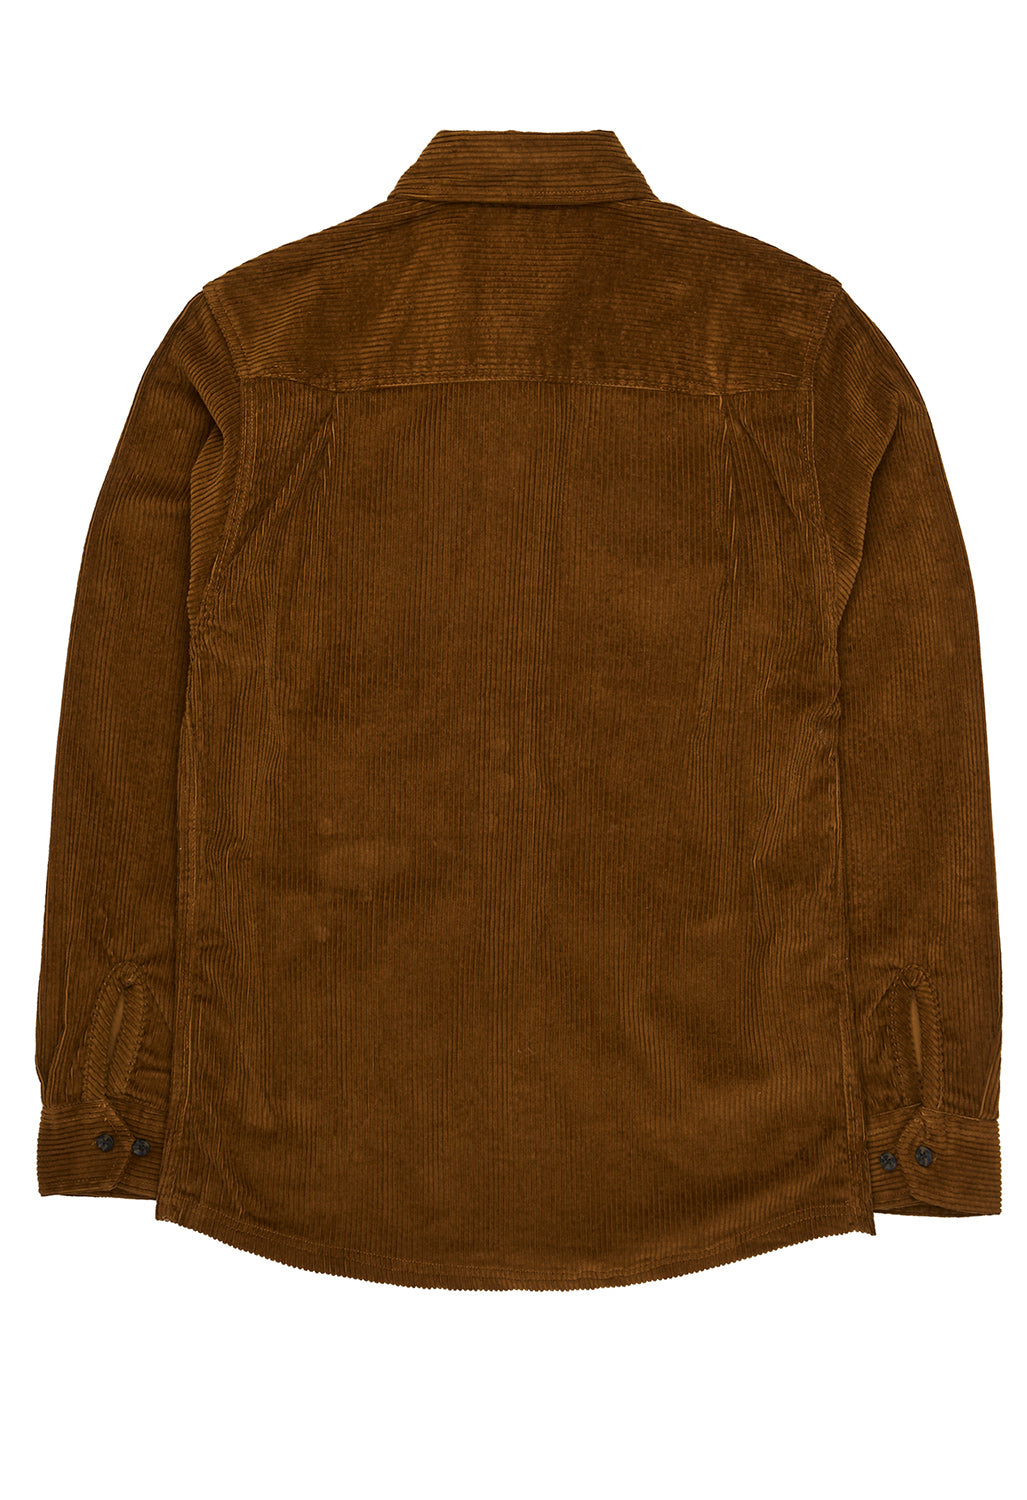 KAVU Men's Petos Overshirt - Bronze Brown